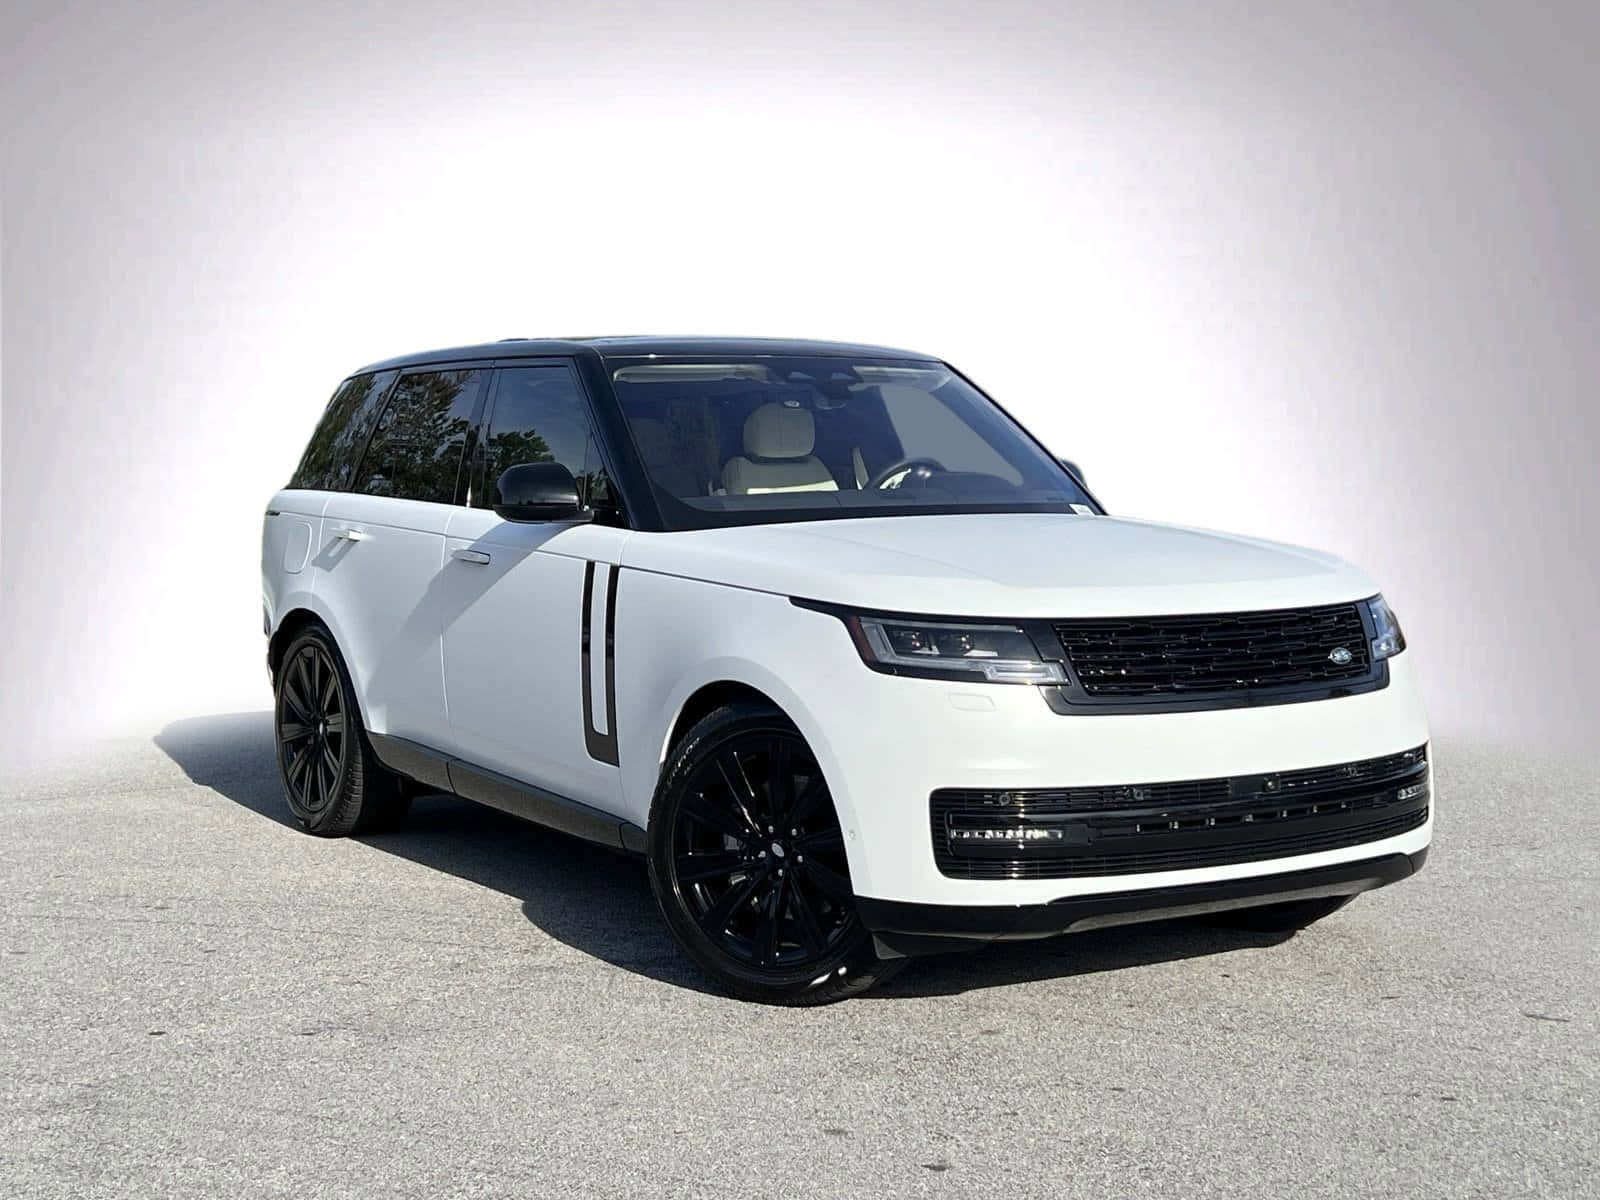 Envit Range Rover Parkerad På En Parkeringsplats